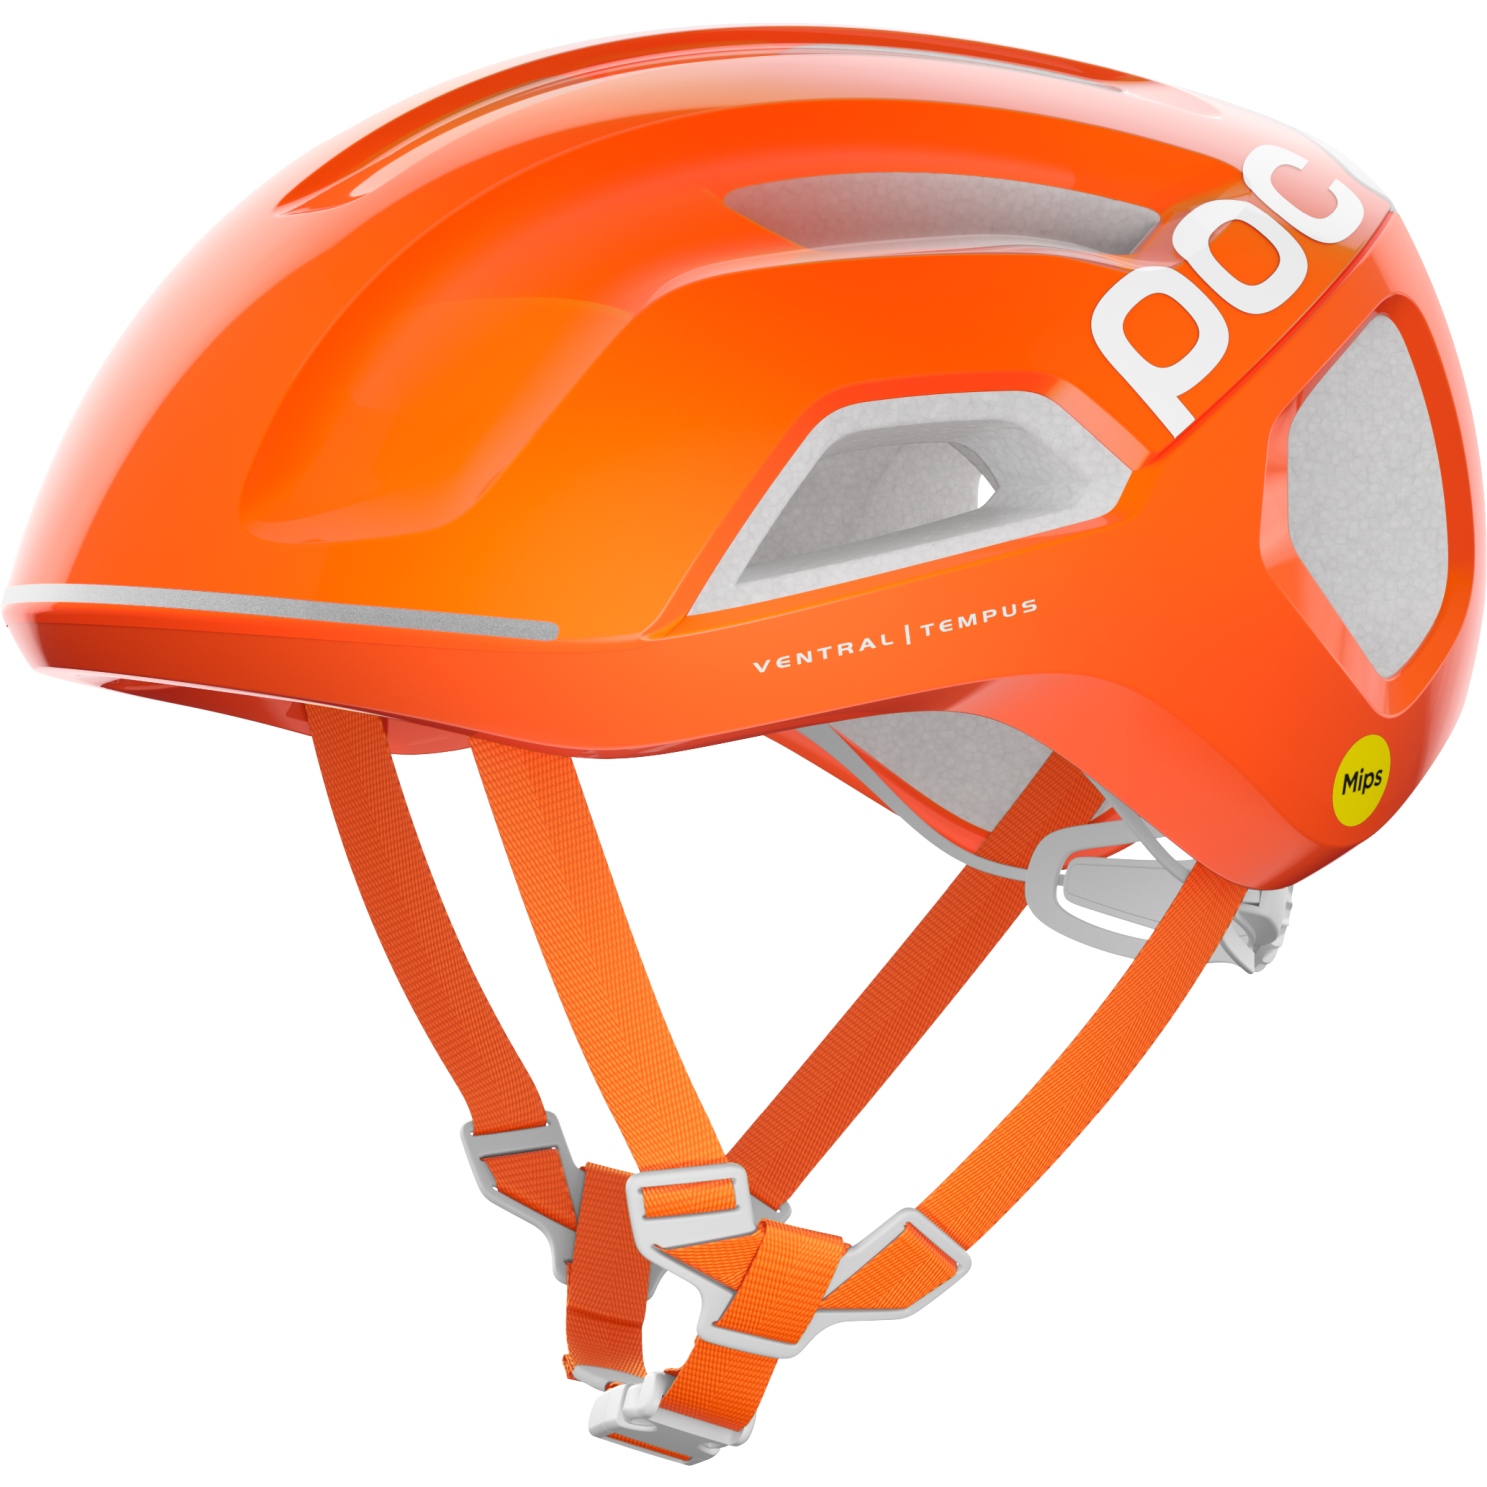 Produktbild von POC Ventral Tempus MIPS Helm - 1217 Fluorescent Orange Avip